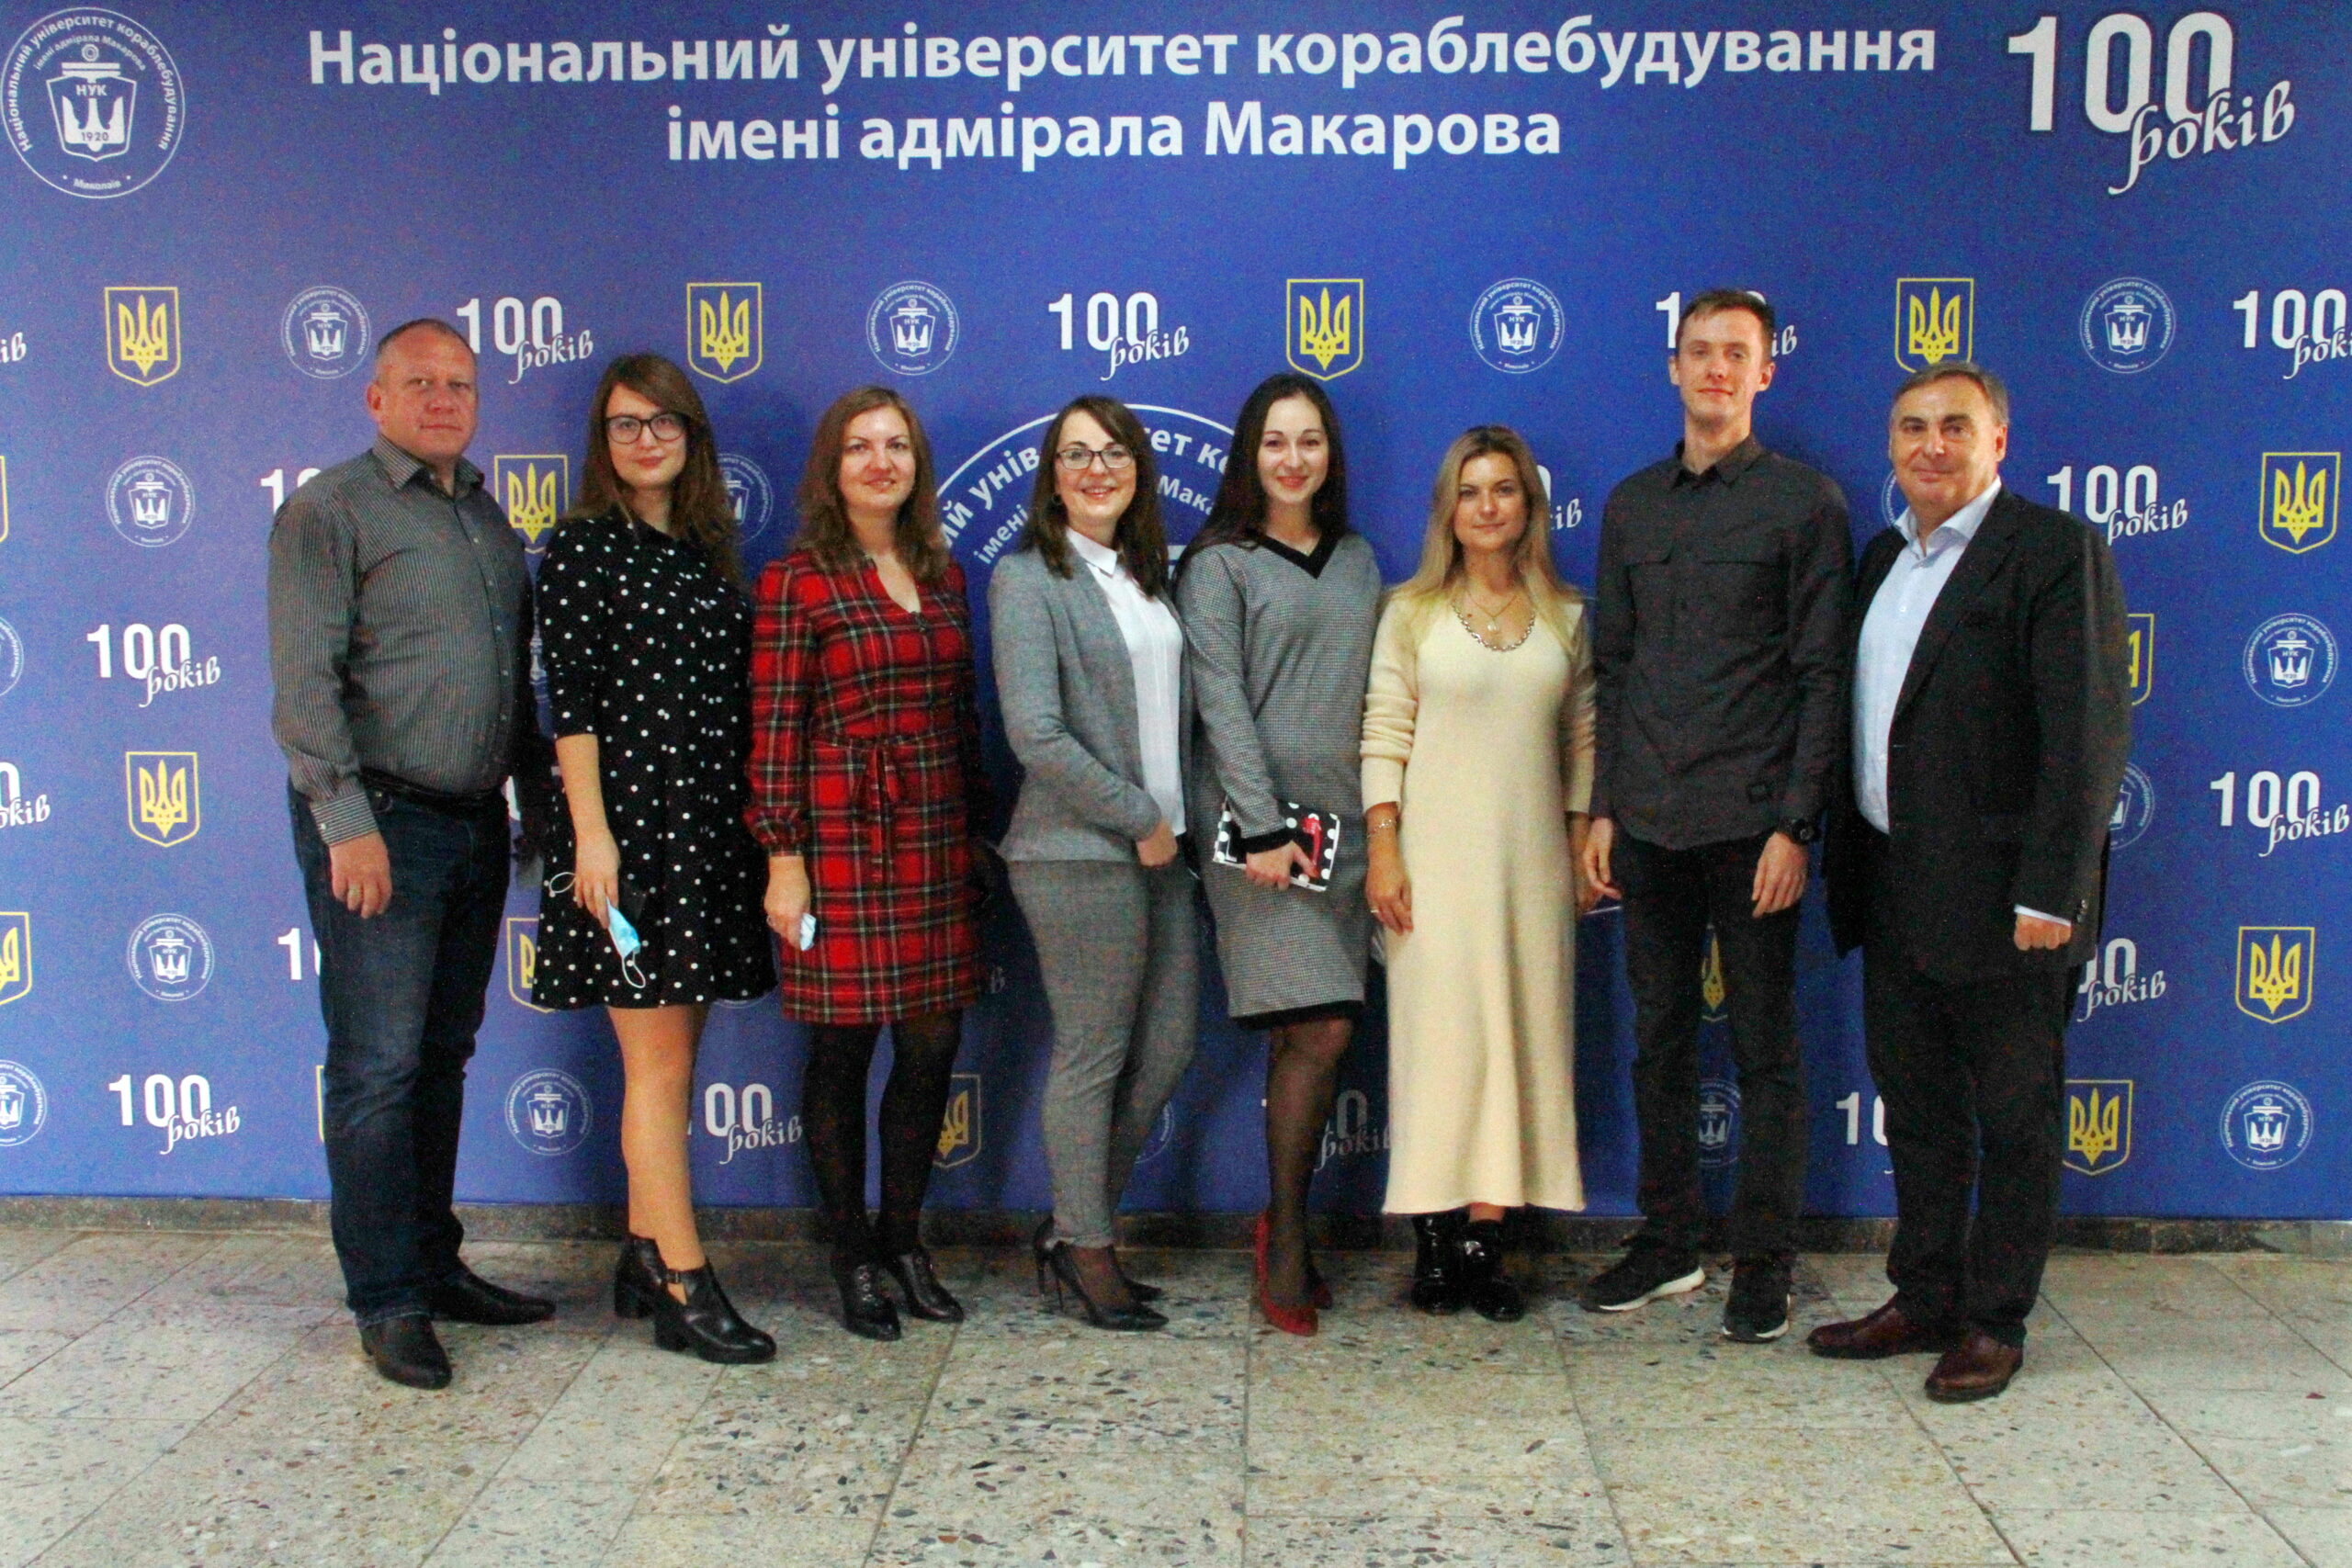 Правопросвіта і правозахист у Миколаєві: ефективність роботи юридичної клініки «Ex aequo et bono»